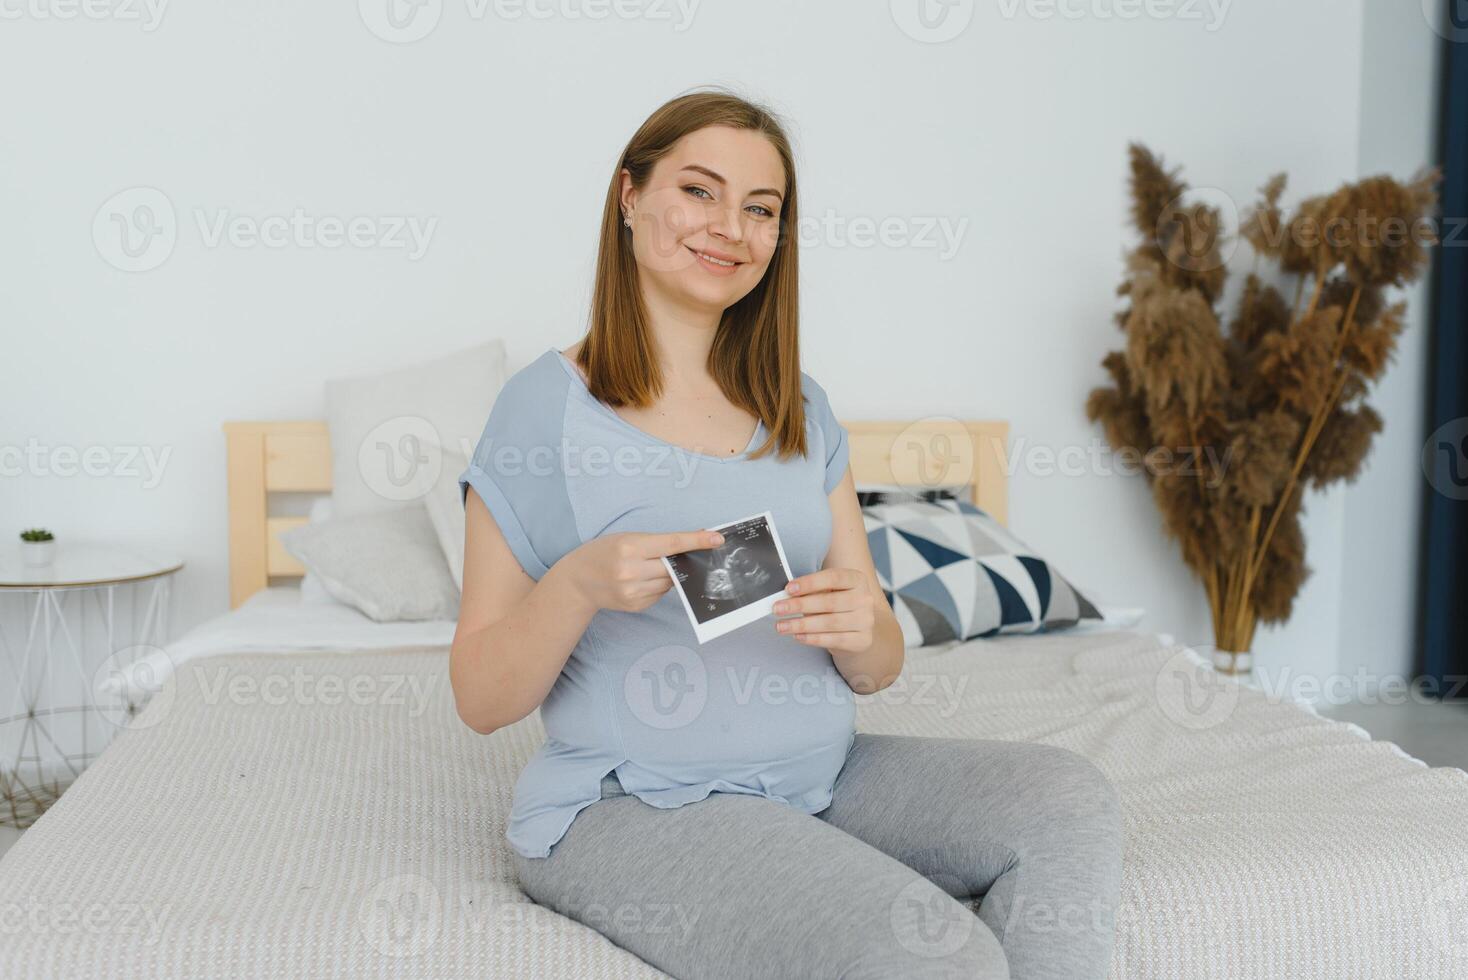 schwanger Frau halten Ultraschall Scan auf ihr Bauch foto